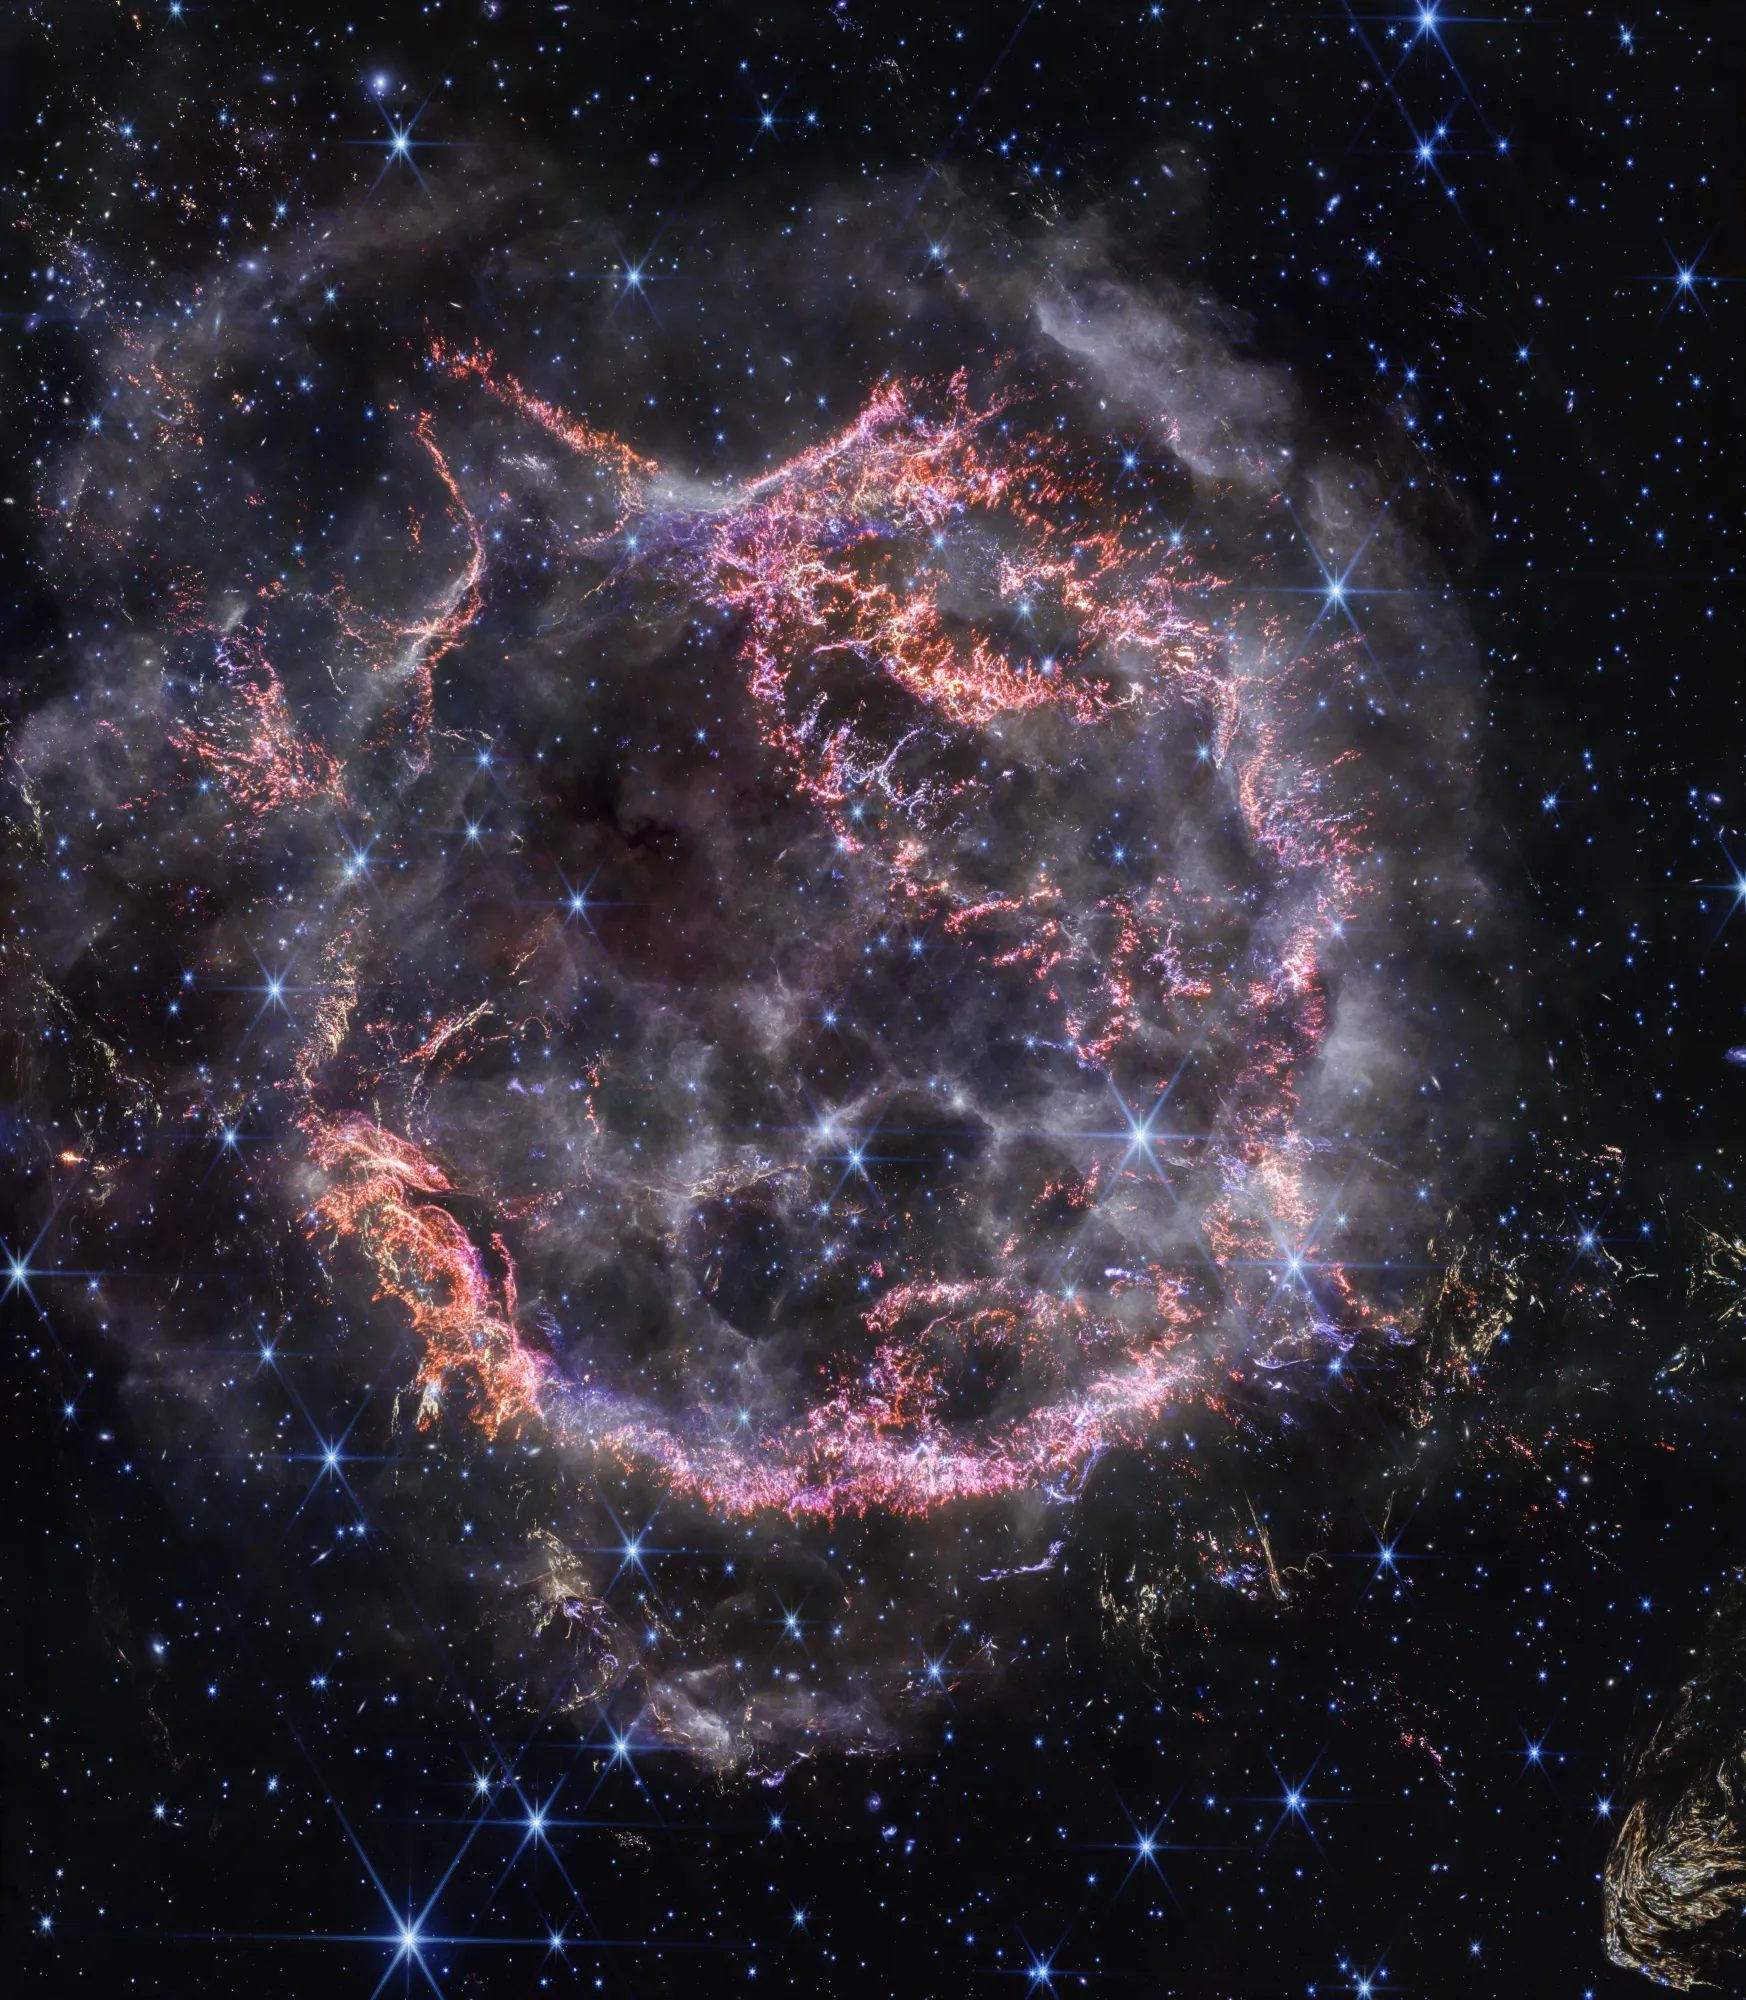 This famous supernova remnant is hiding a secret